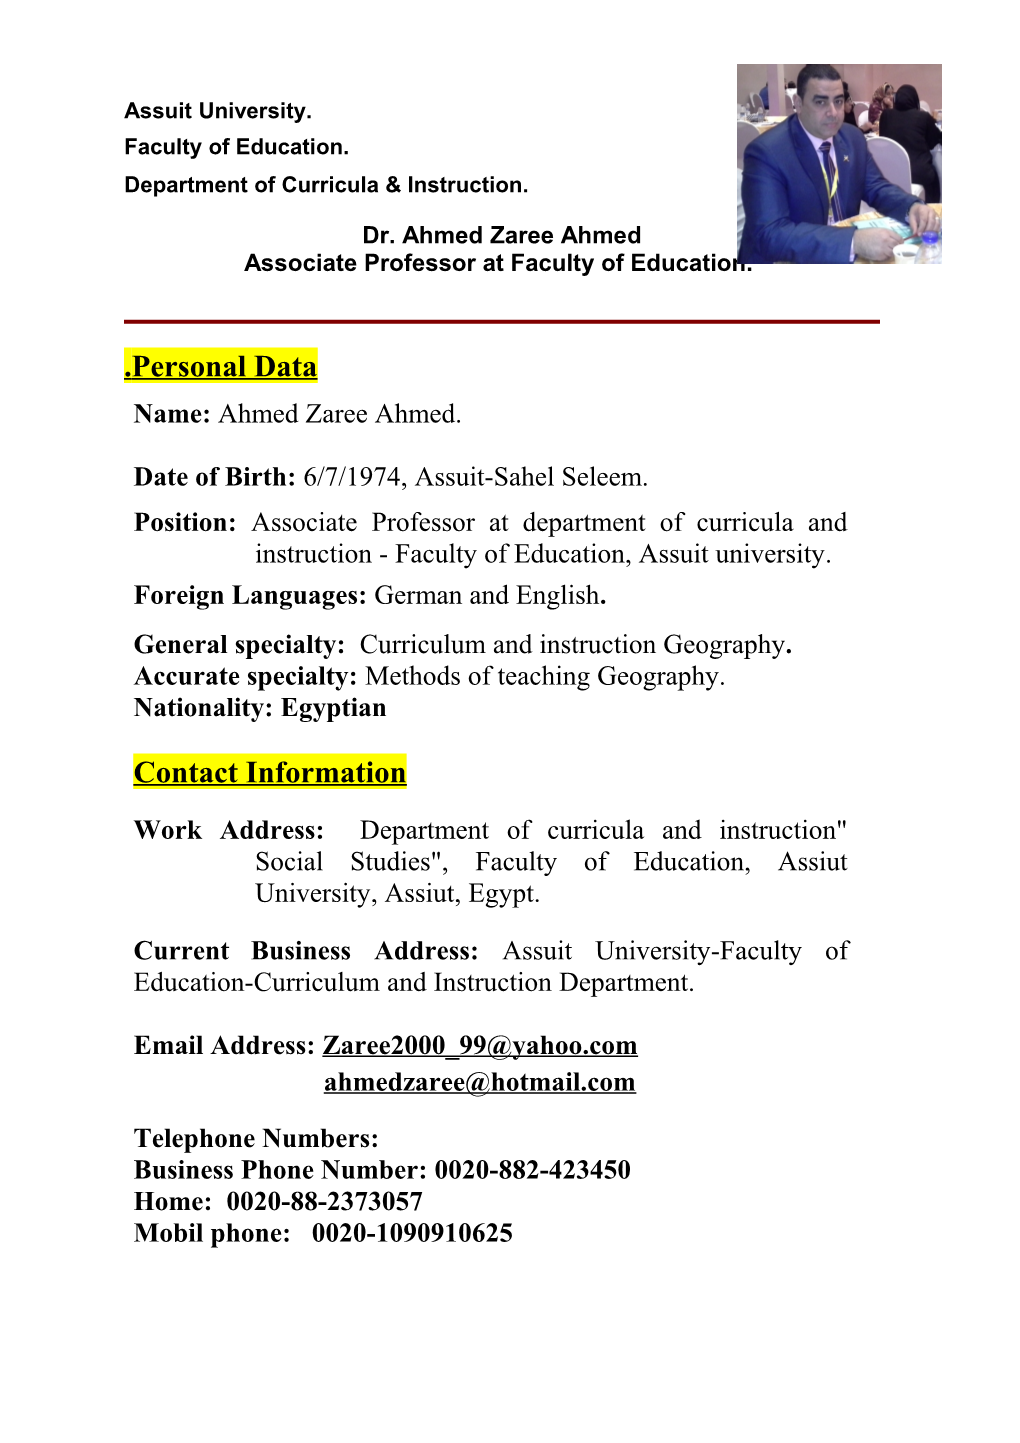 Dr. Ahmed Zaree Ahmed. CV